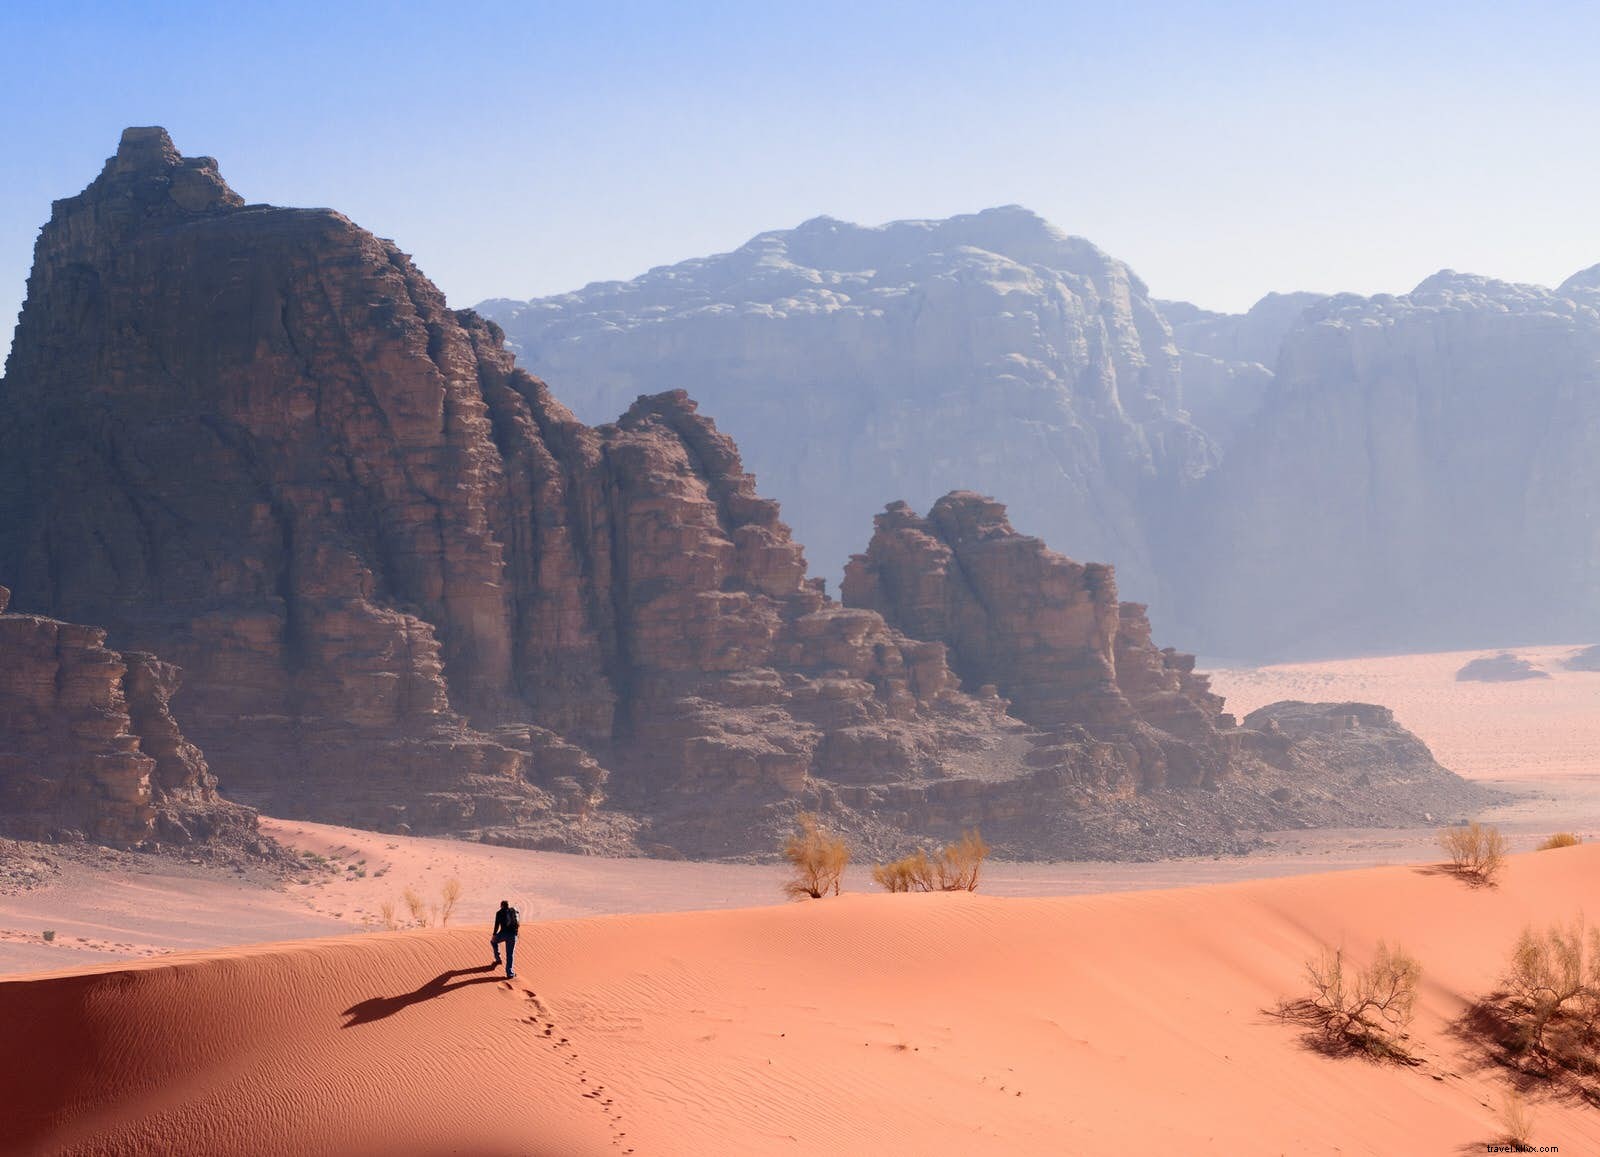 10 hal yang perlu diketahui sebelum Anda bepergian ke Yordania 